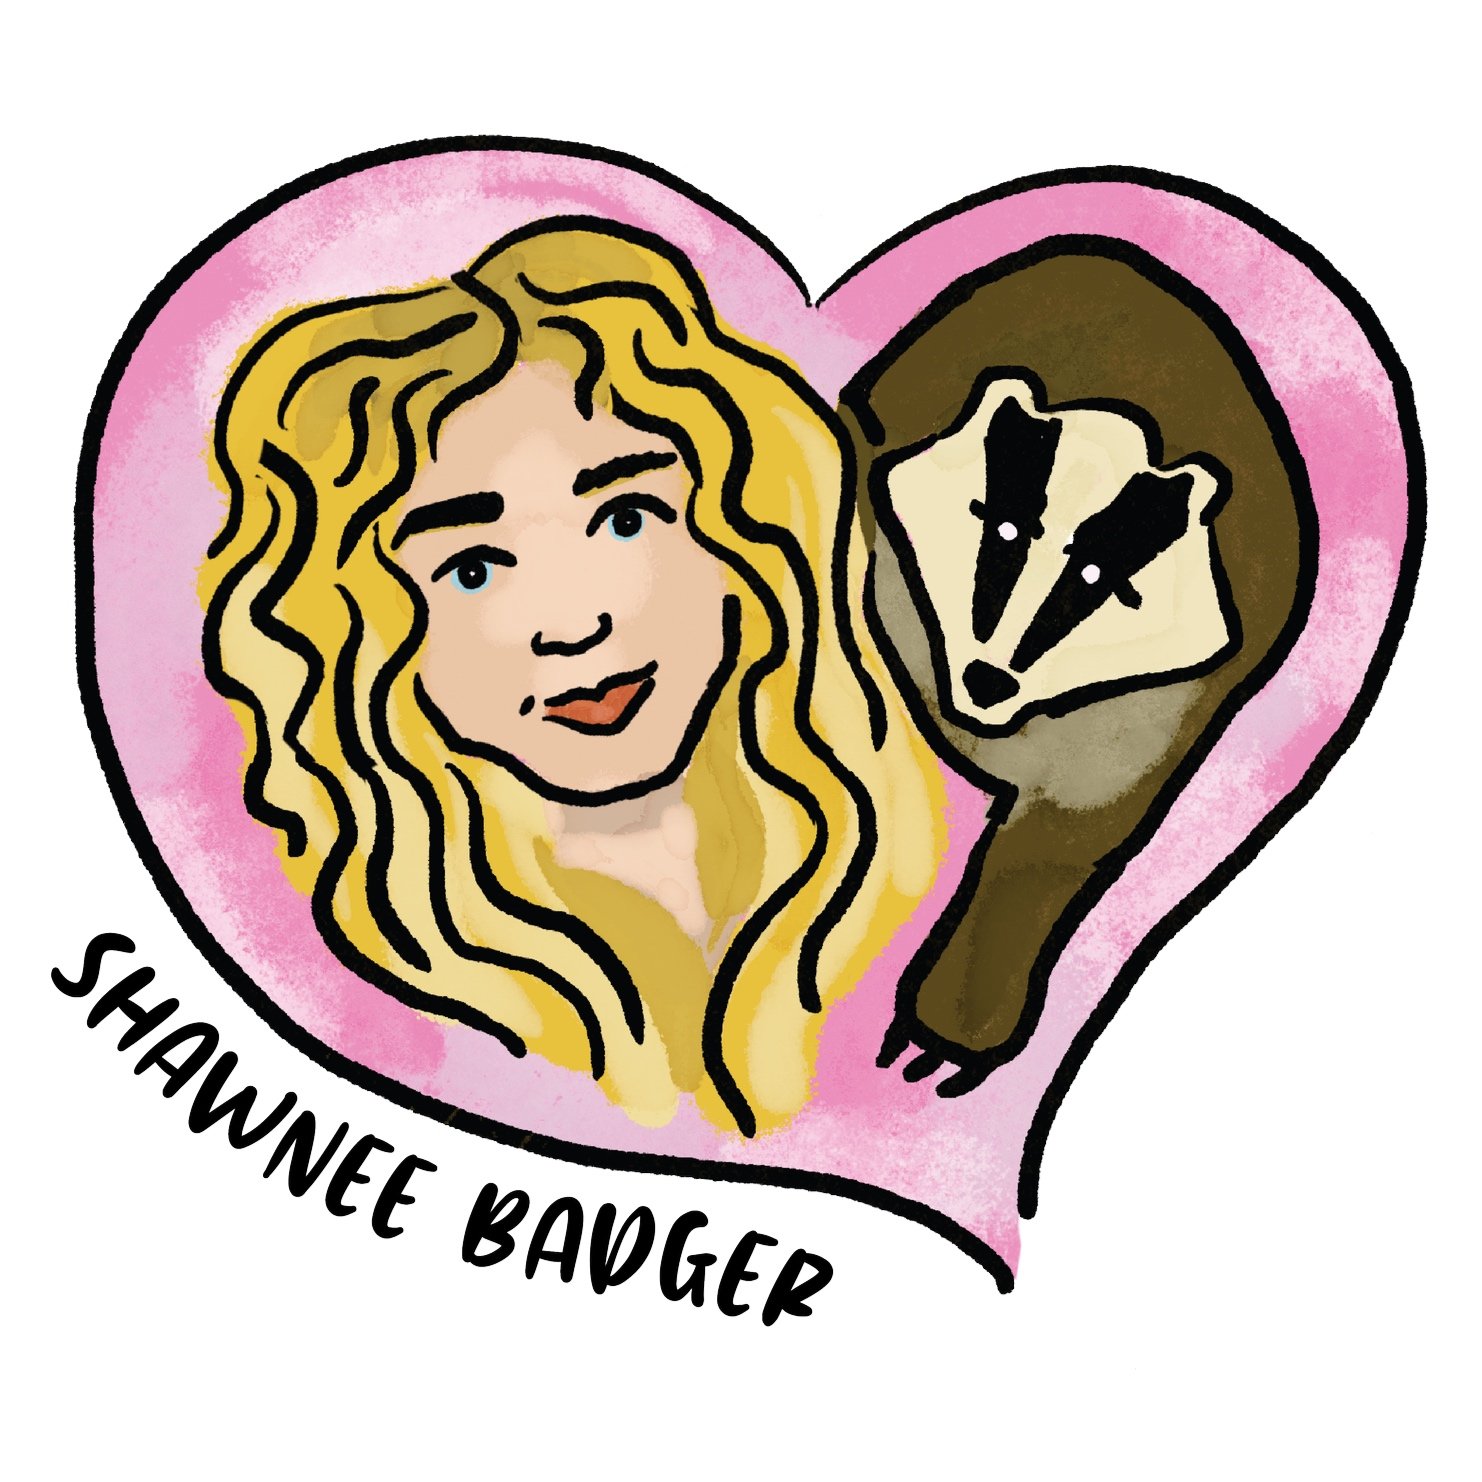 Shawnee Badger - Actor, Model, Activist, Artist